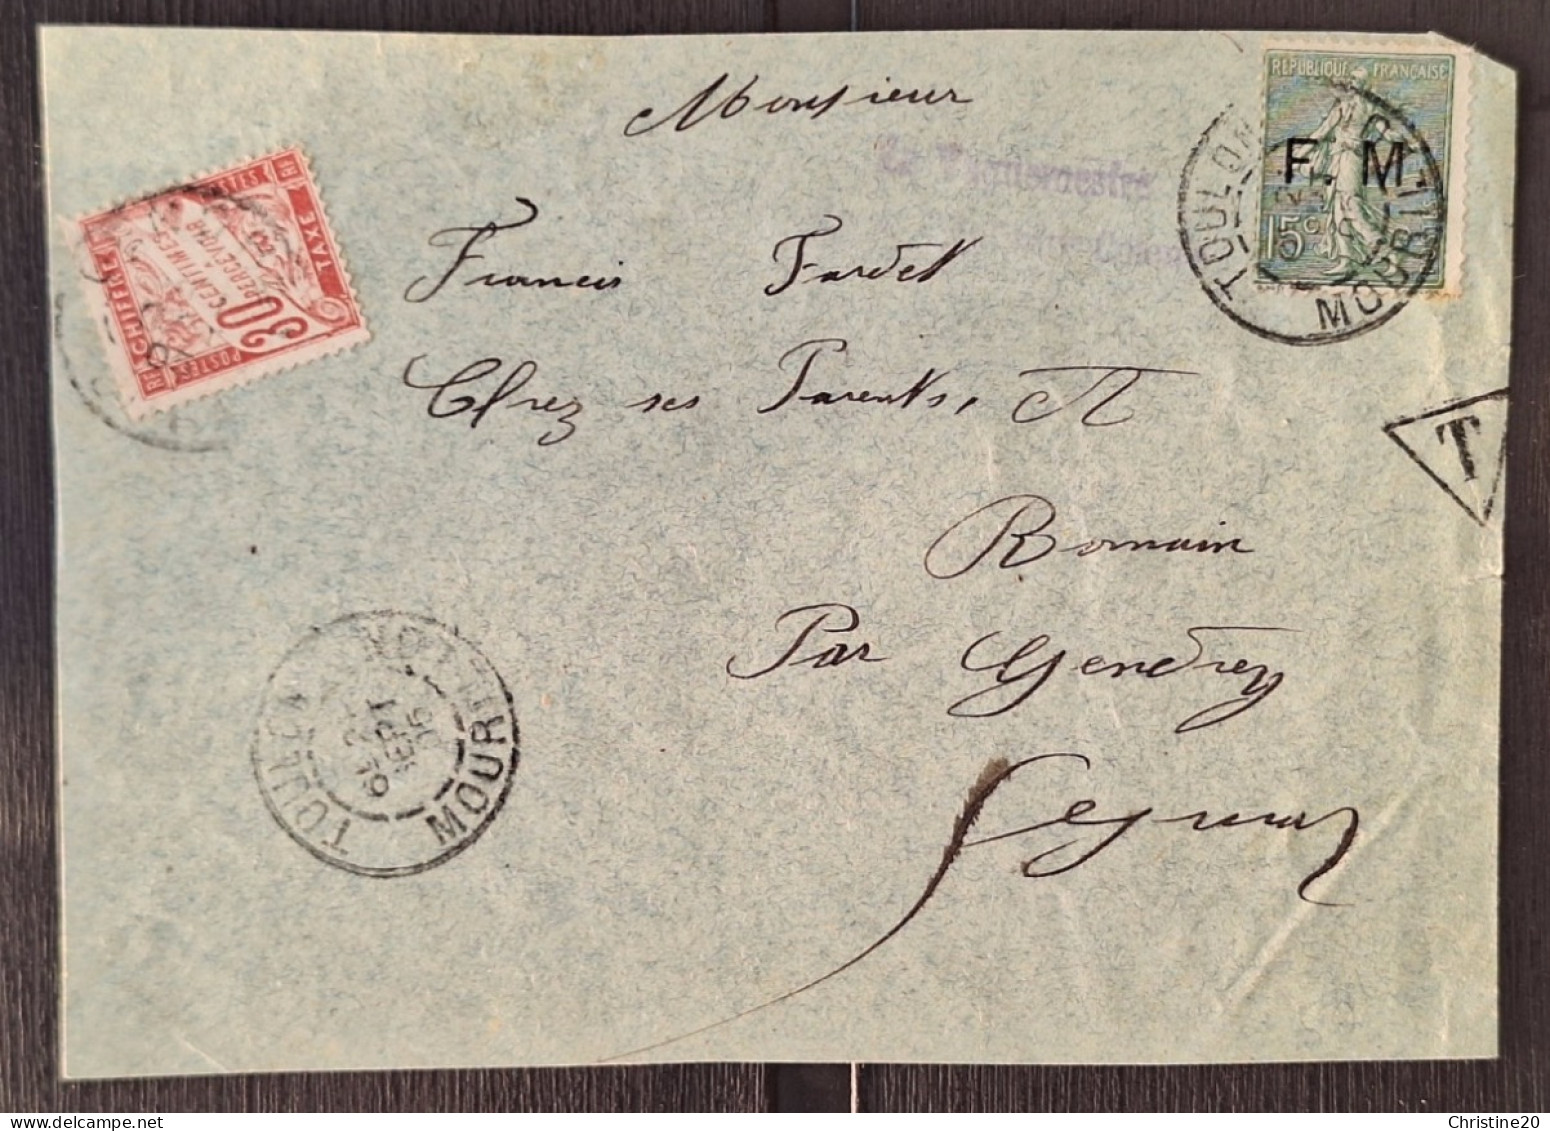 France 1901/04 Fm3 + Taxe N°33 Sur Devant Lettre TB - Military Postage Stamps